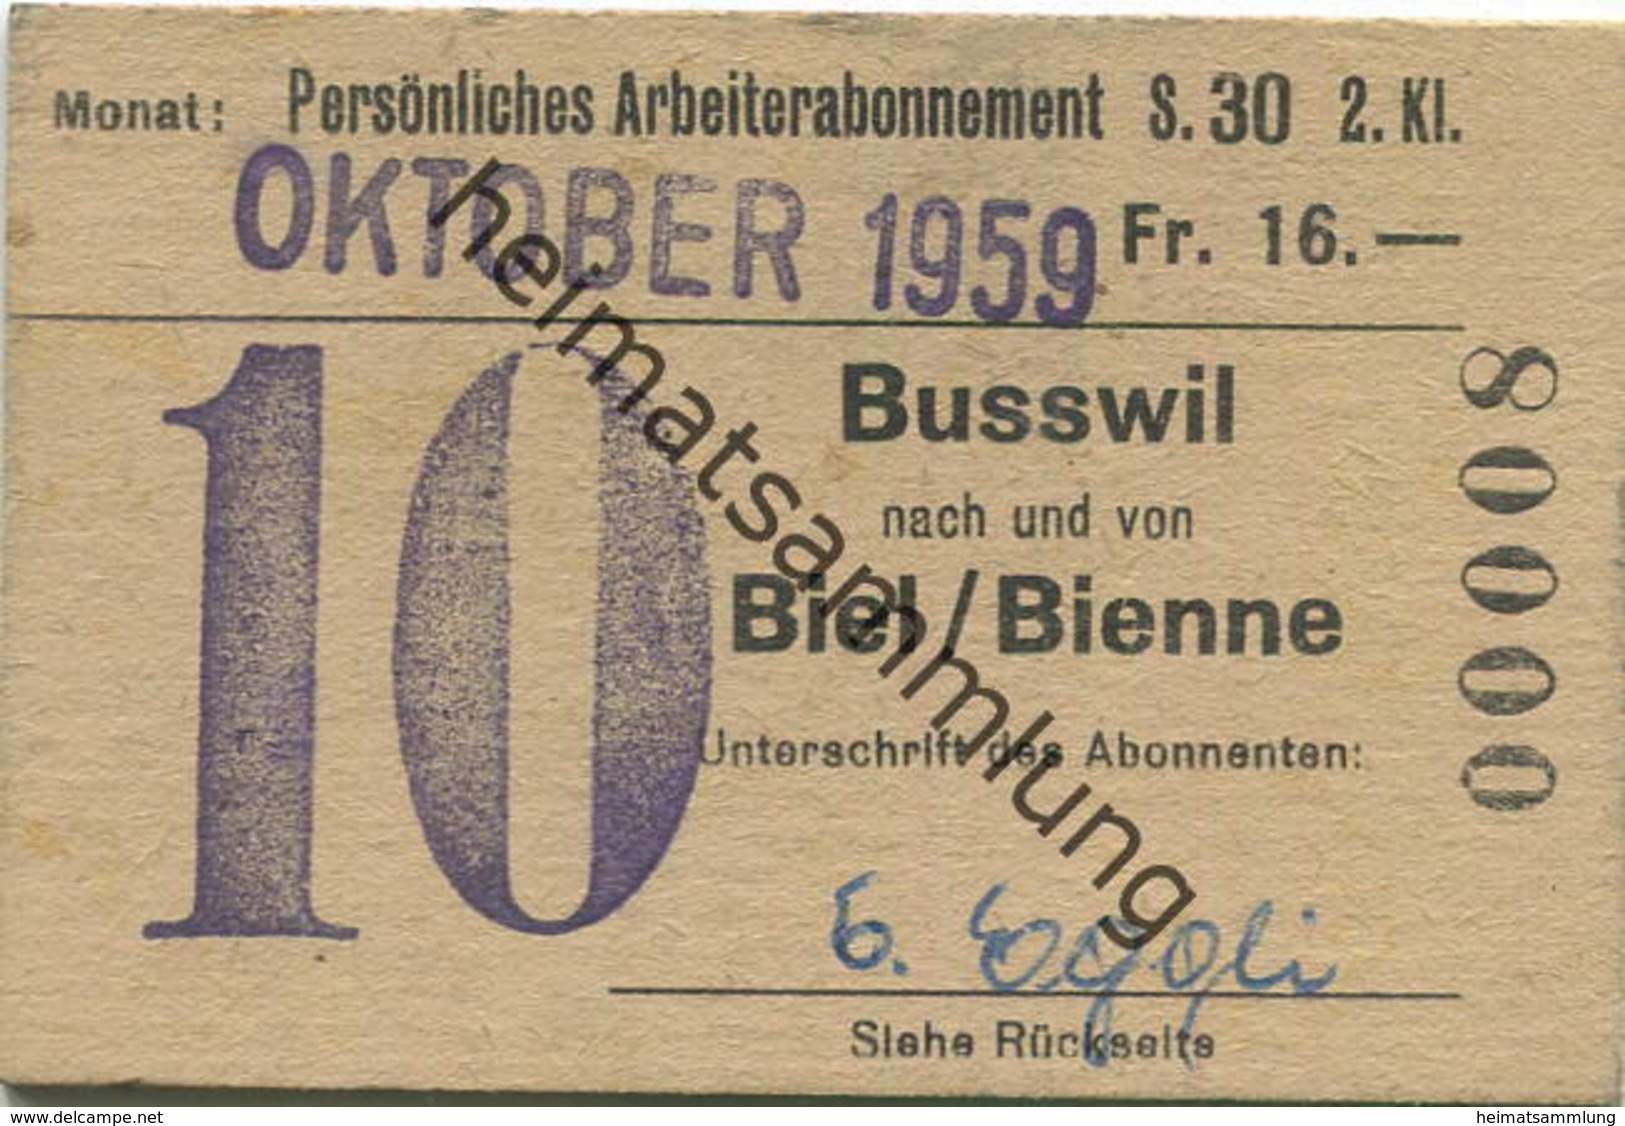 Schweiz - Persönliches Arbeiterabonnement - Busswil Nach Und Von Biel/Bienne - Fahrkarte 2. Klasse 1959 - Europa